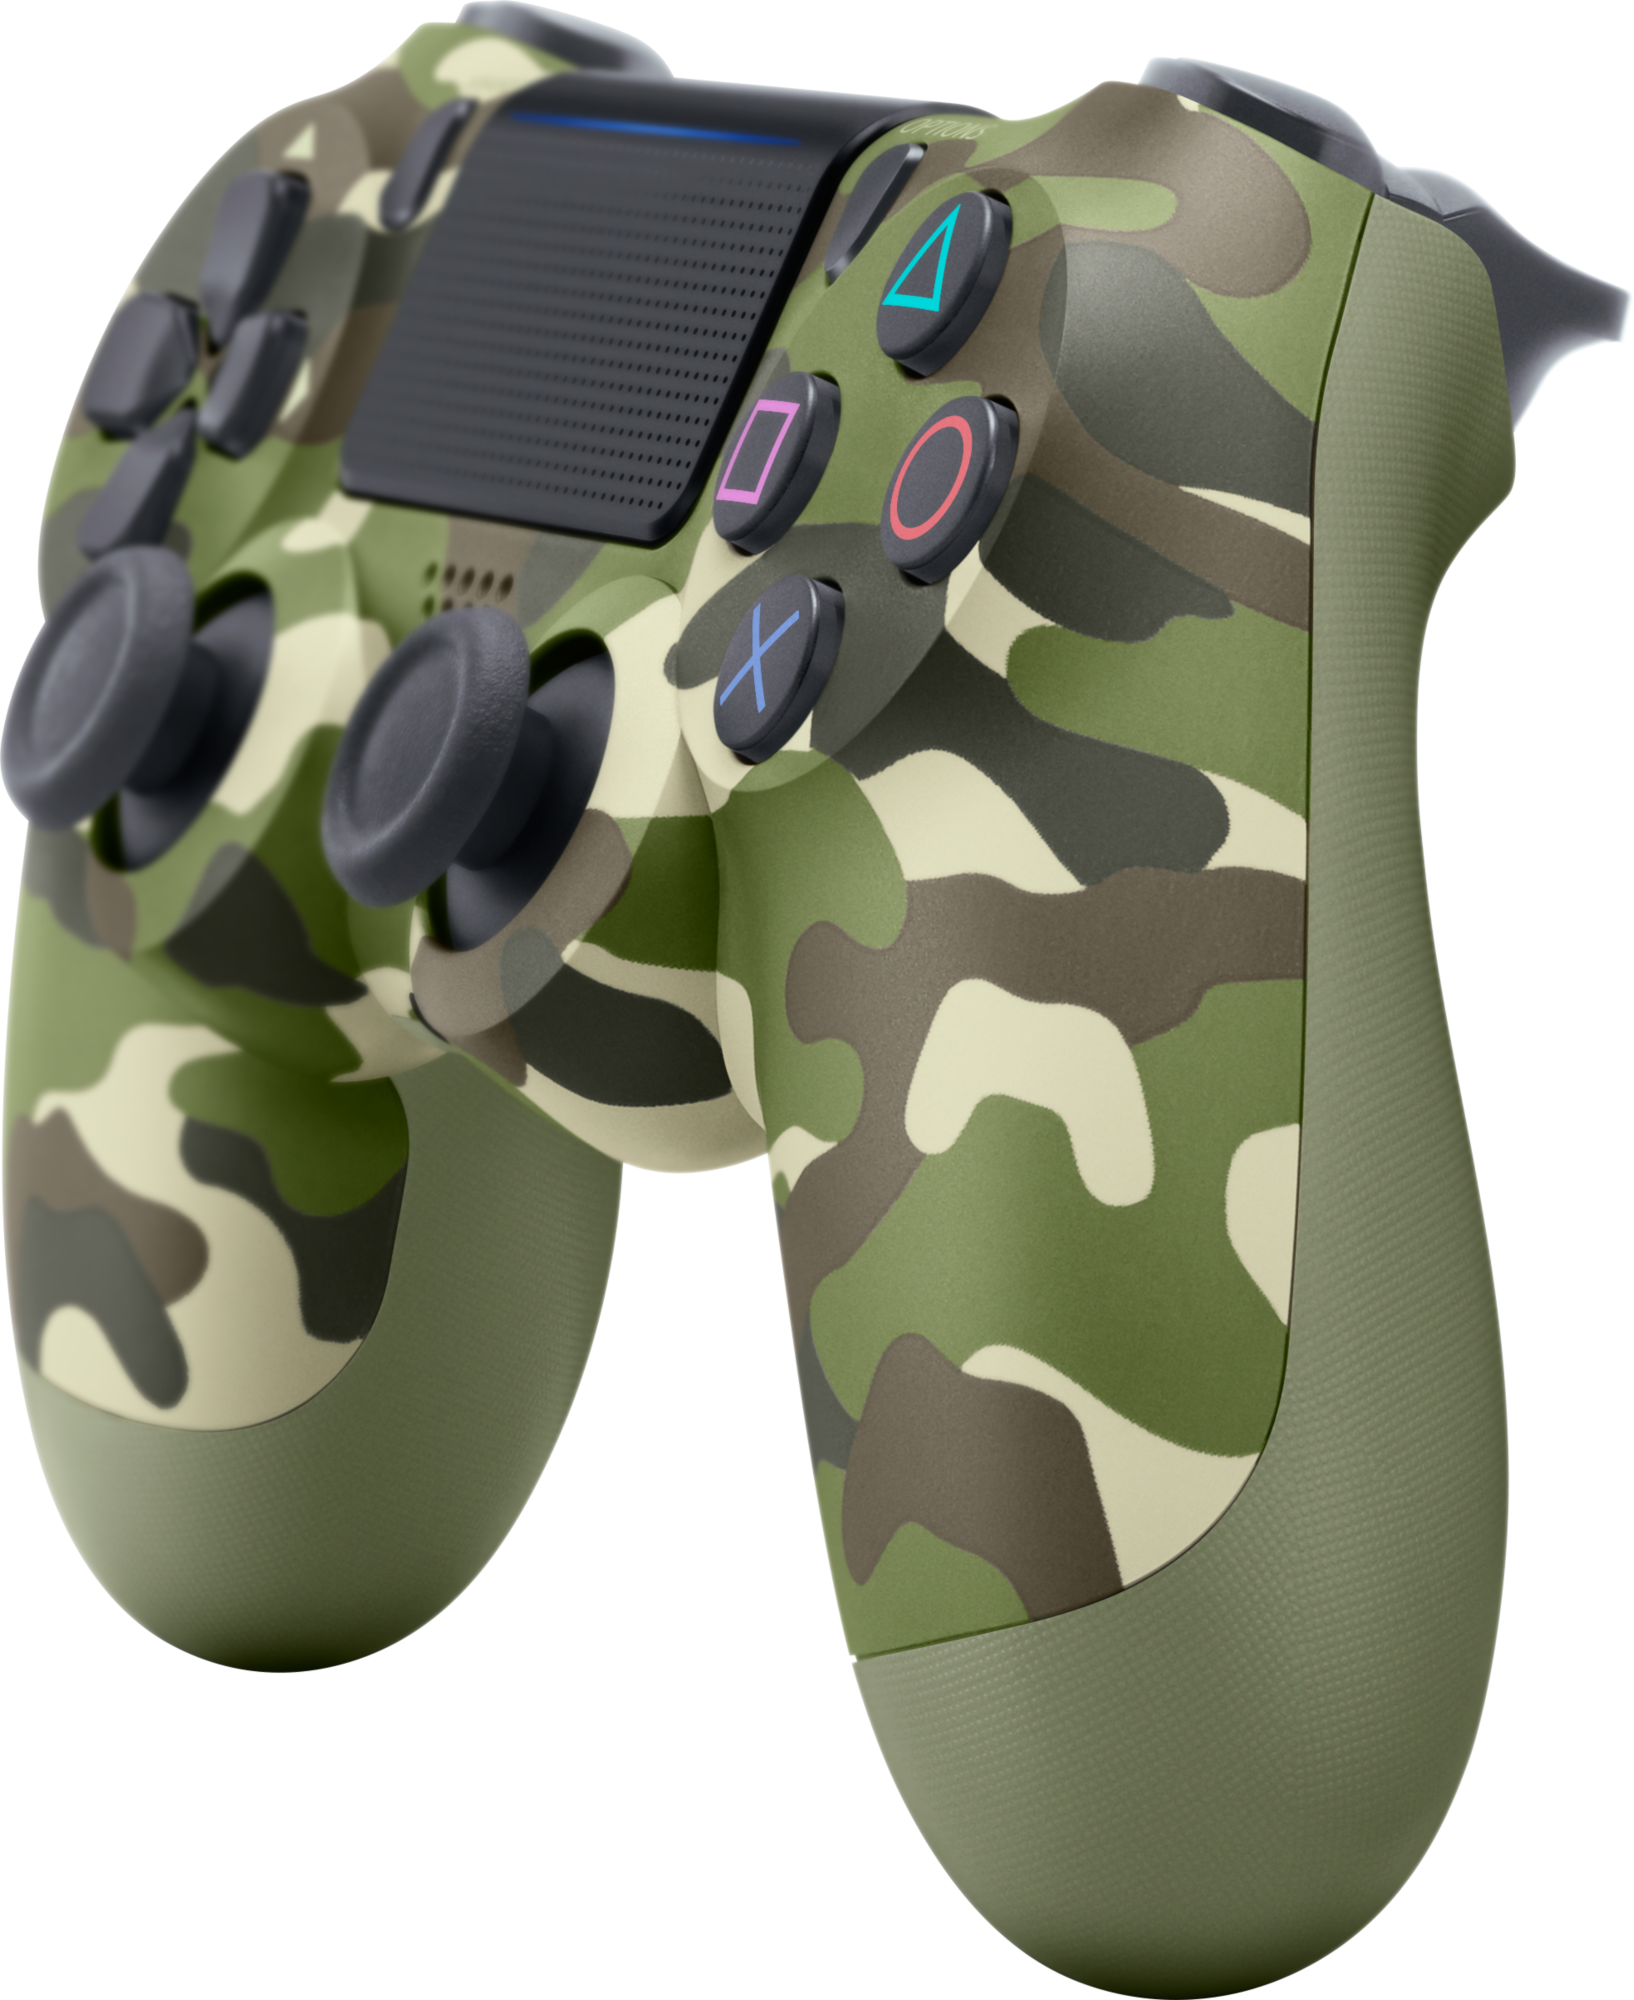 DualShock 4 v2 (Green Camouflage)